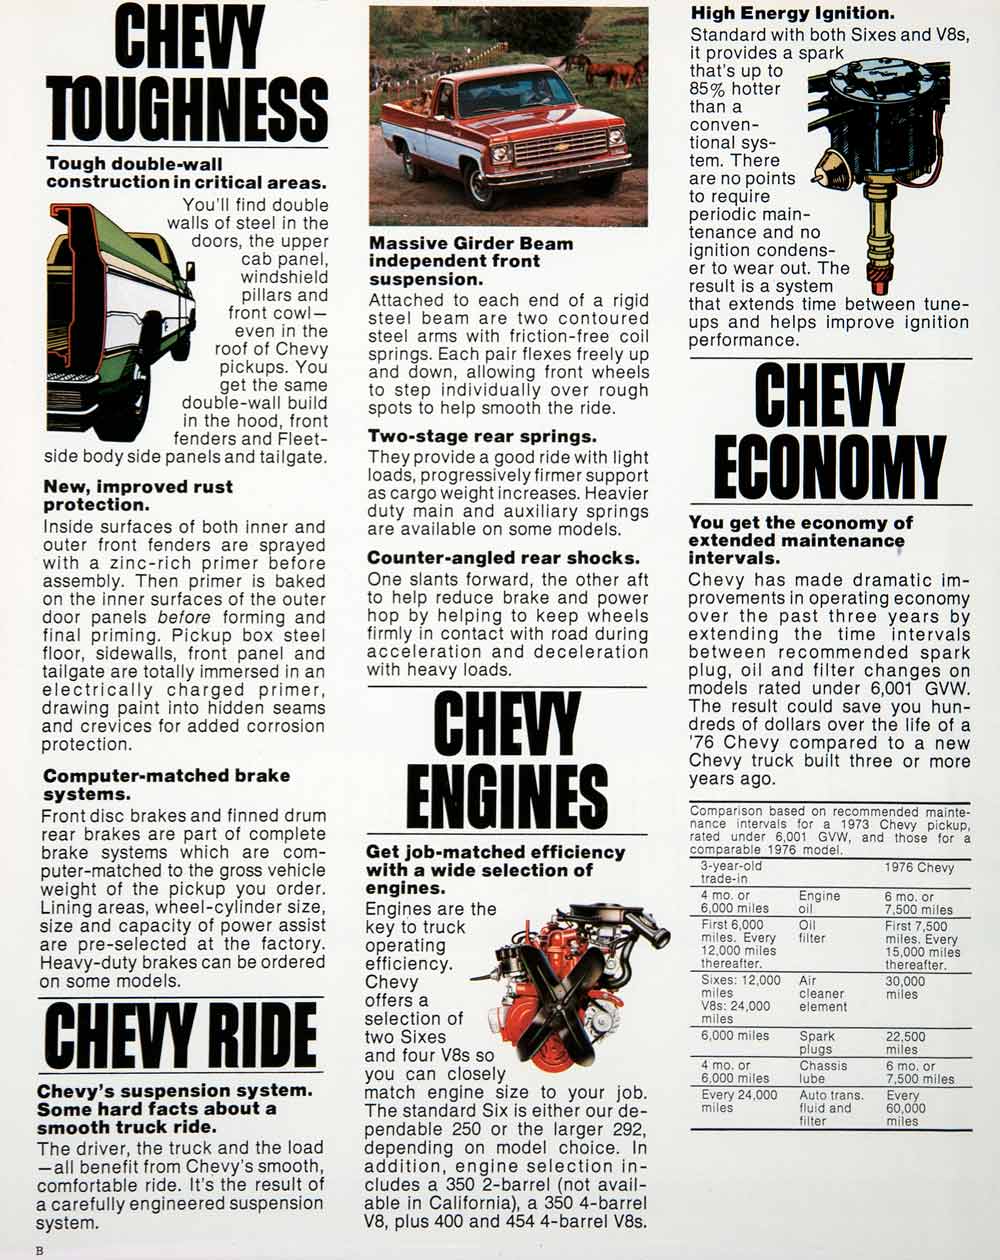 1975 Ad Chevy Chevrolet Pickup Truck Farming Engine Chassis Bonus Cab El SF4